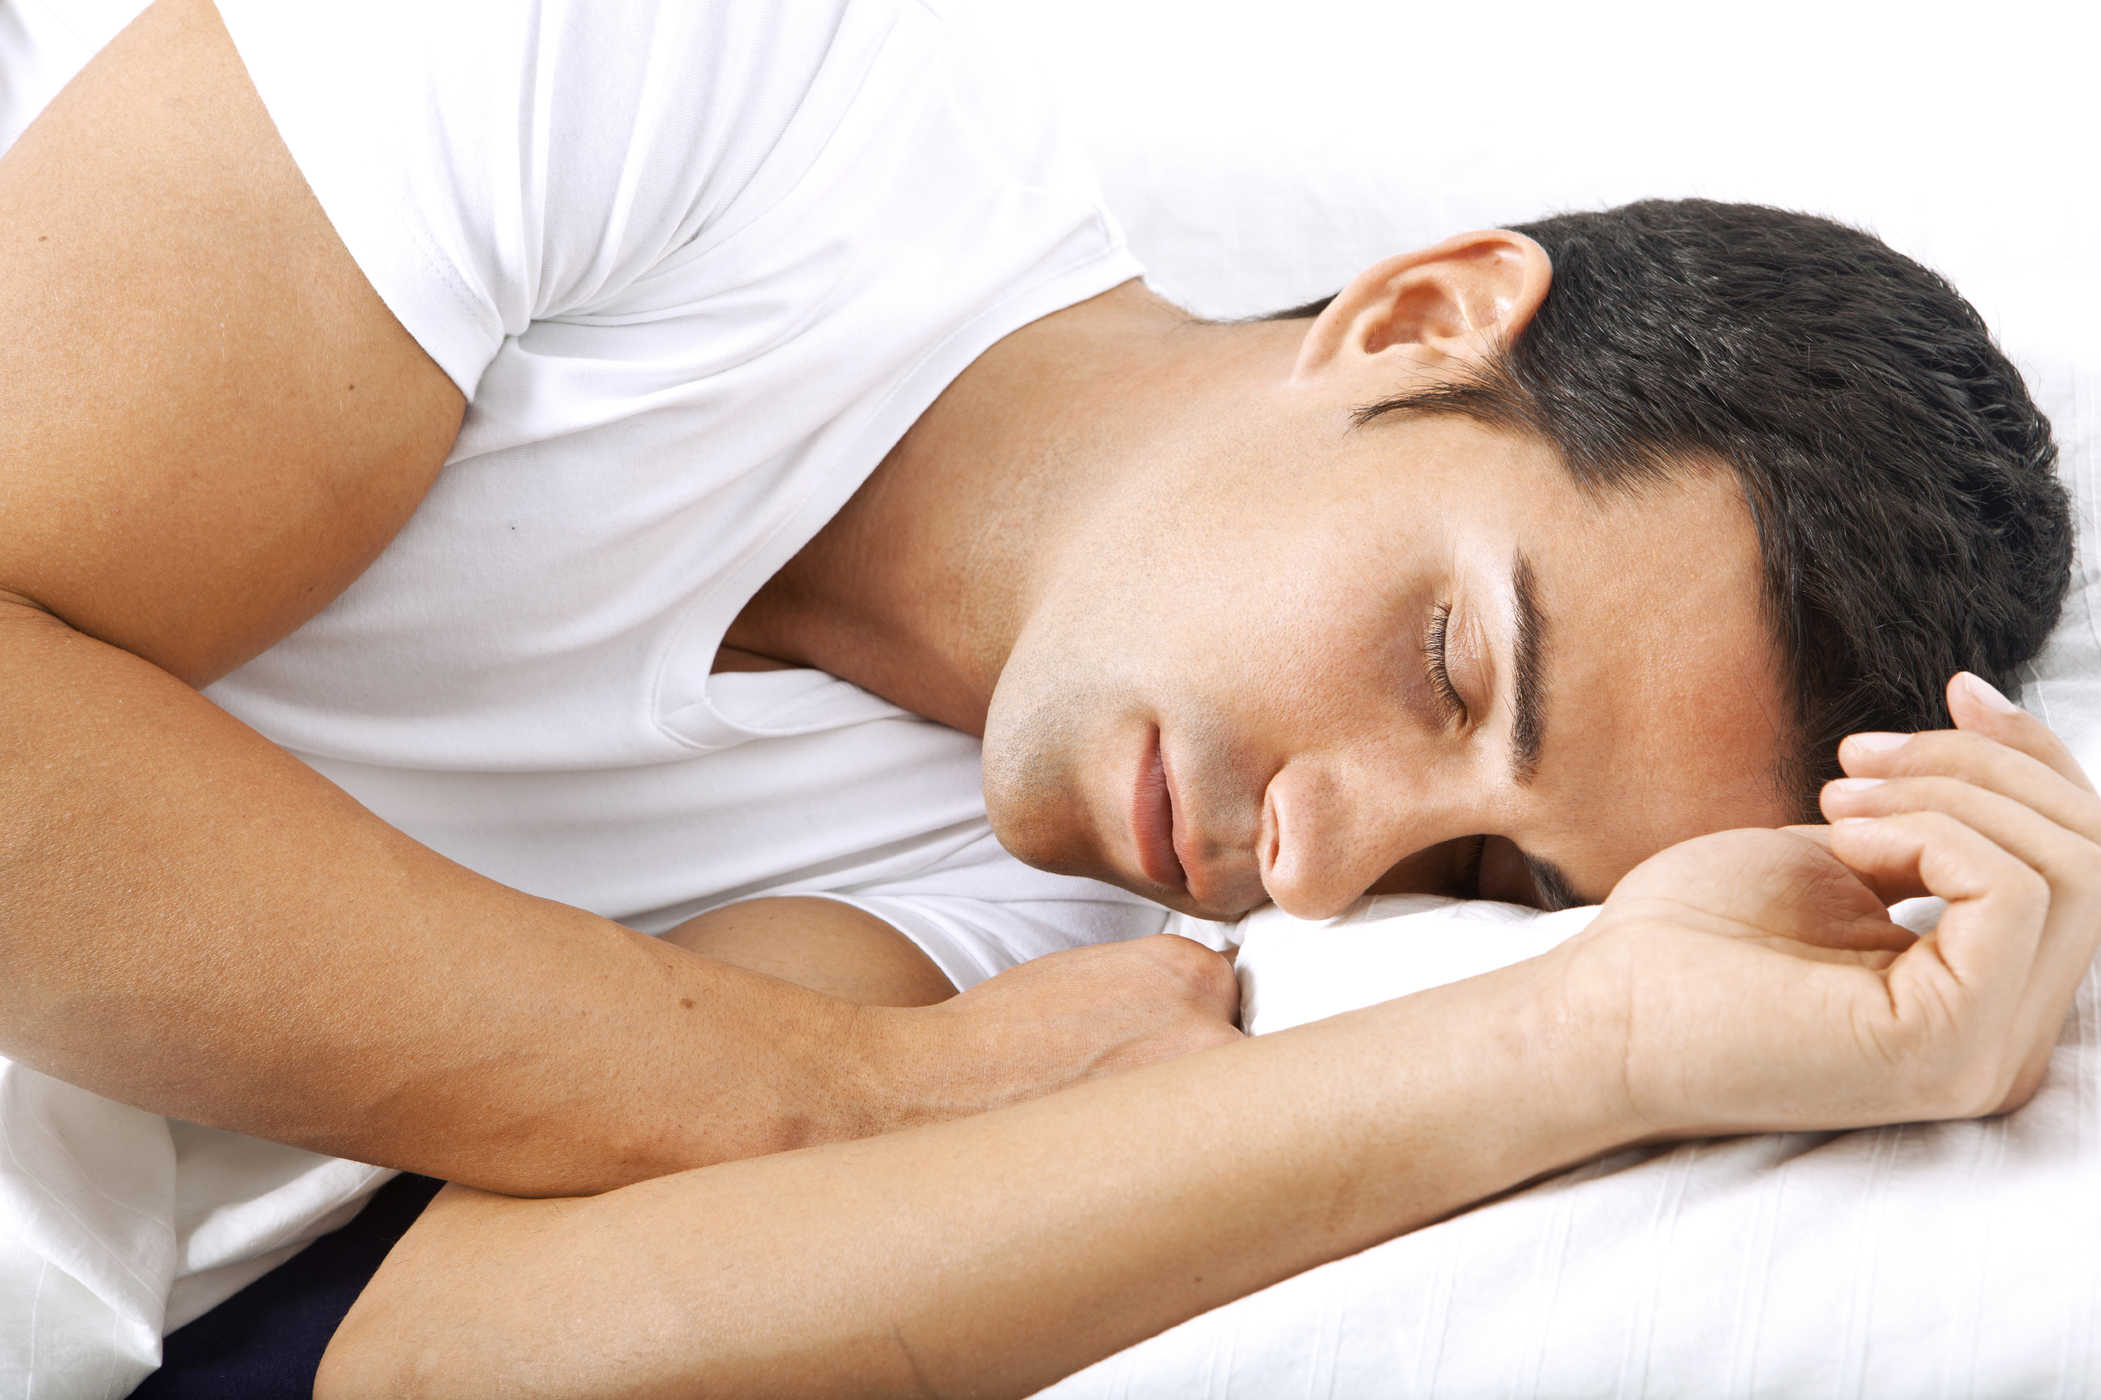 unen kauneuden oireyhtymä nukkuu hyvin pitkään